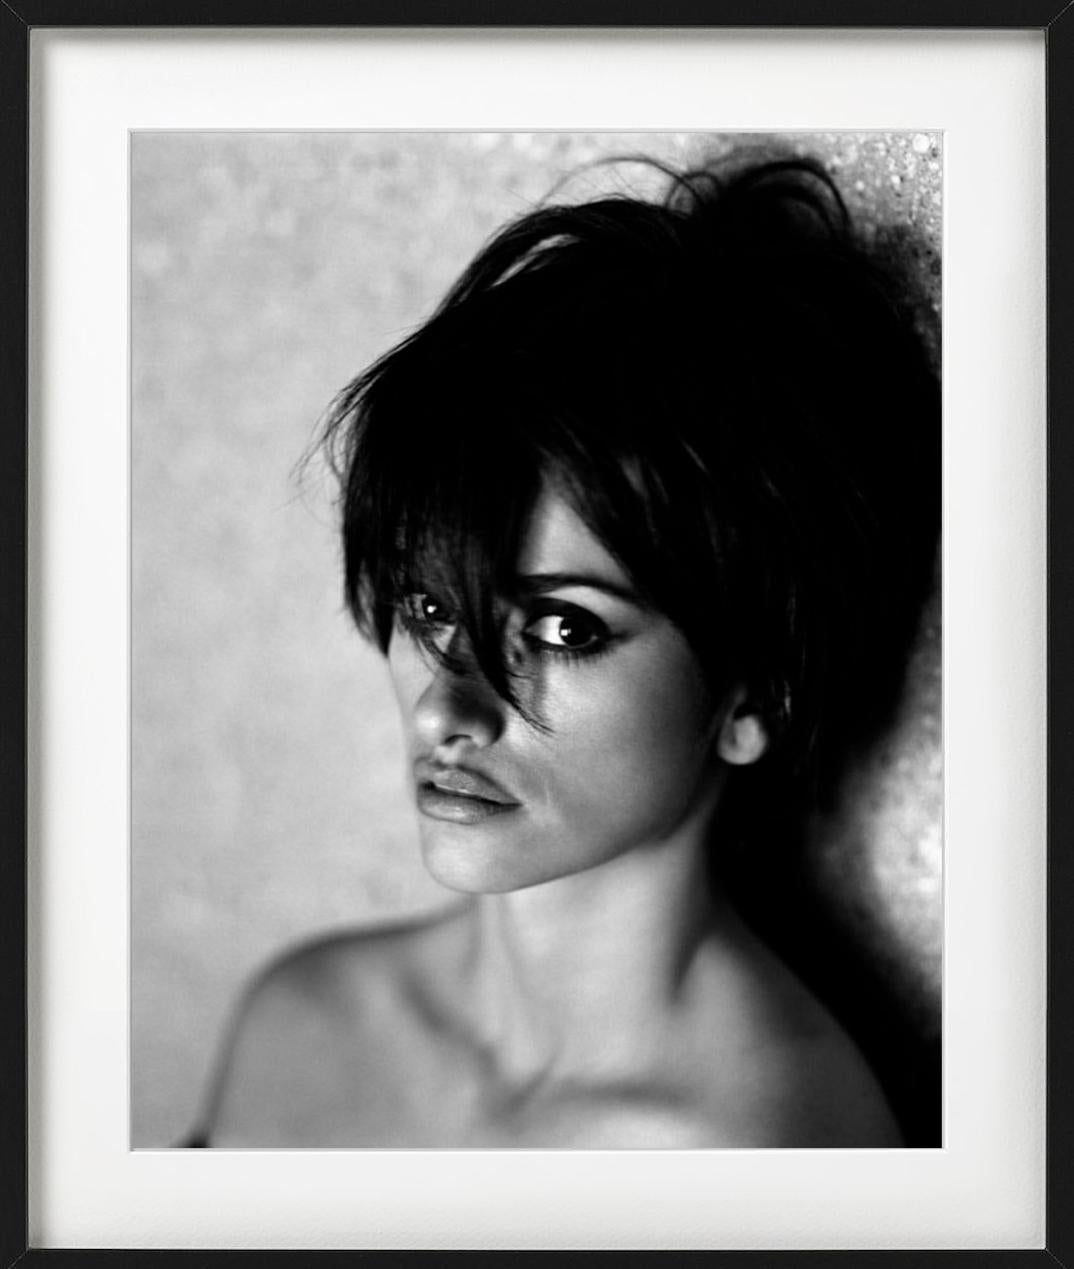 Penelope Cruz für die italienische Vogue, Goldstein House, LA – Kunstfotografie 2006 (Grau), Black and White Photograph, von Sante D´ Orazio